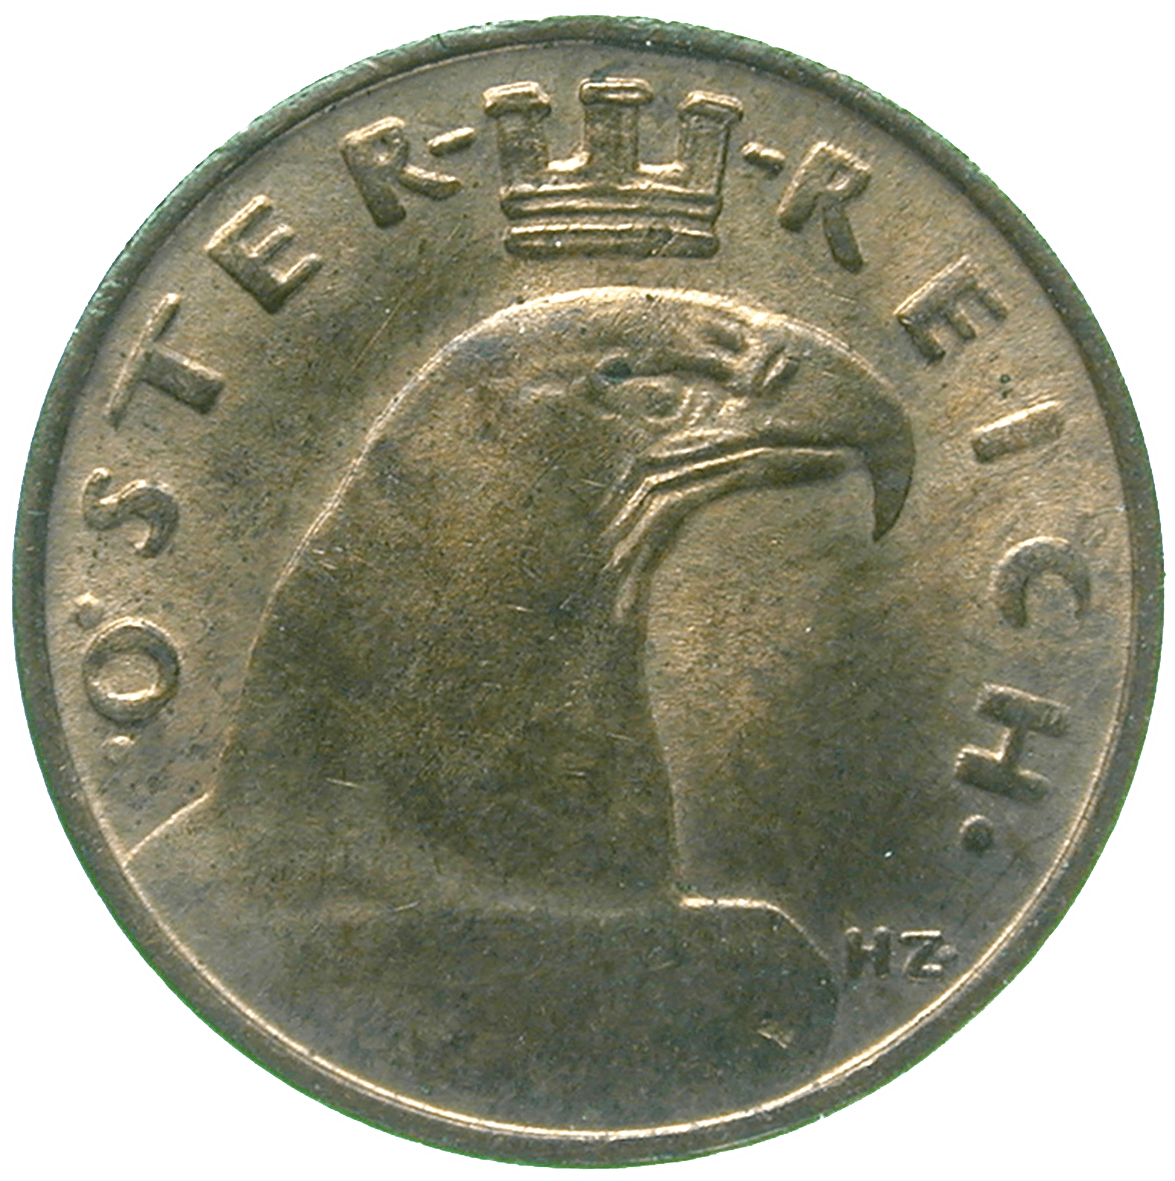 Republic of Austria, 1 Groschen 1931 (obverse)